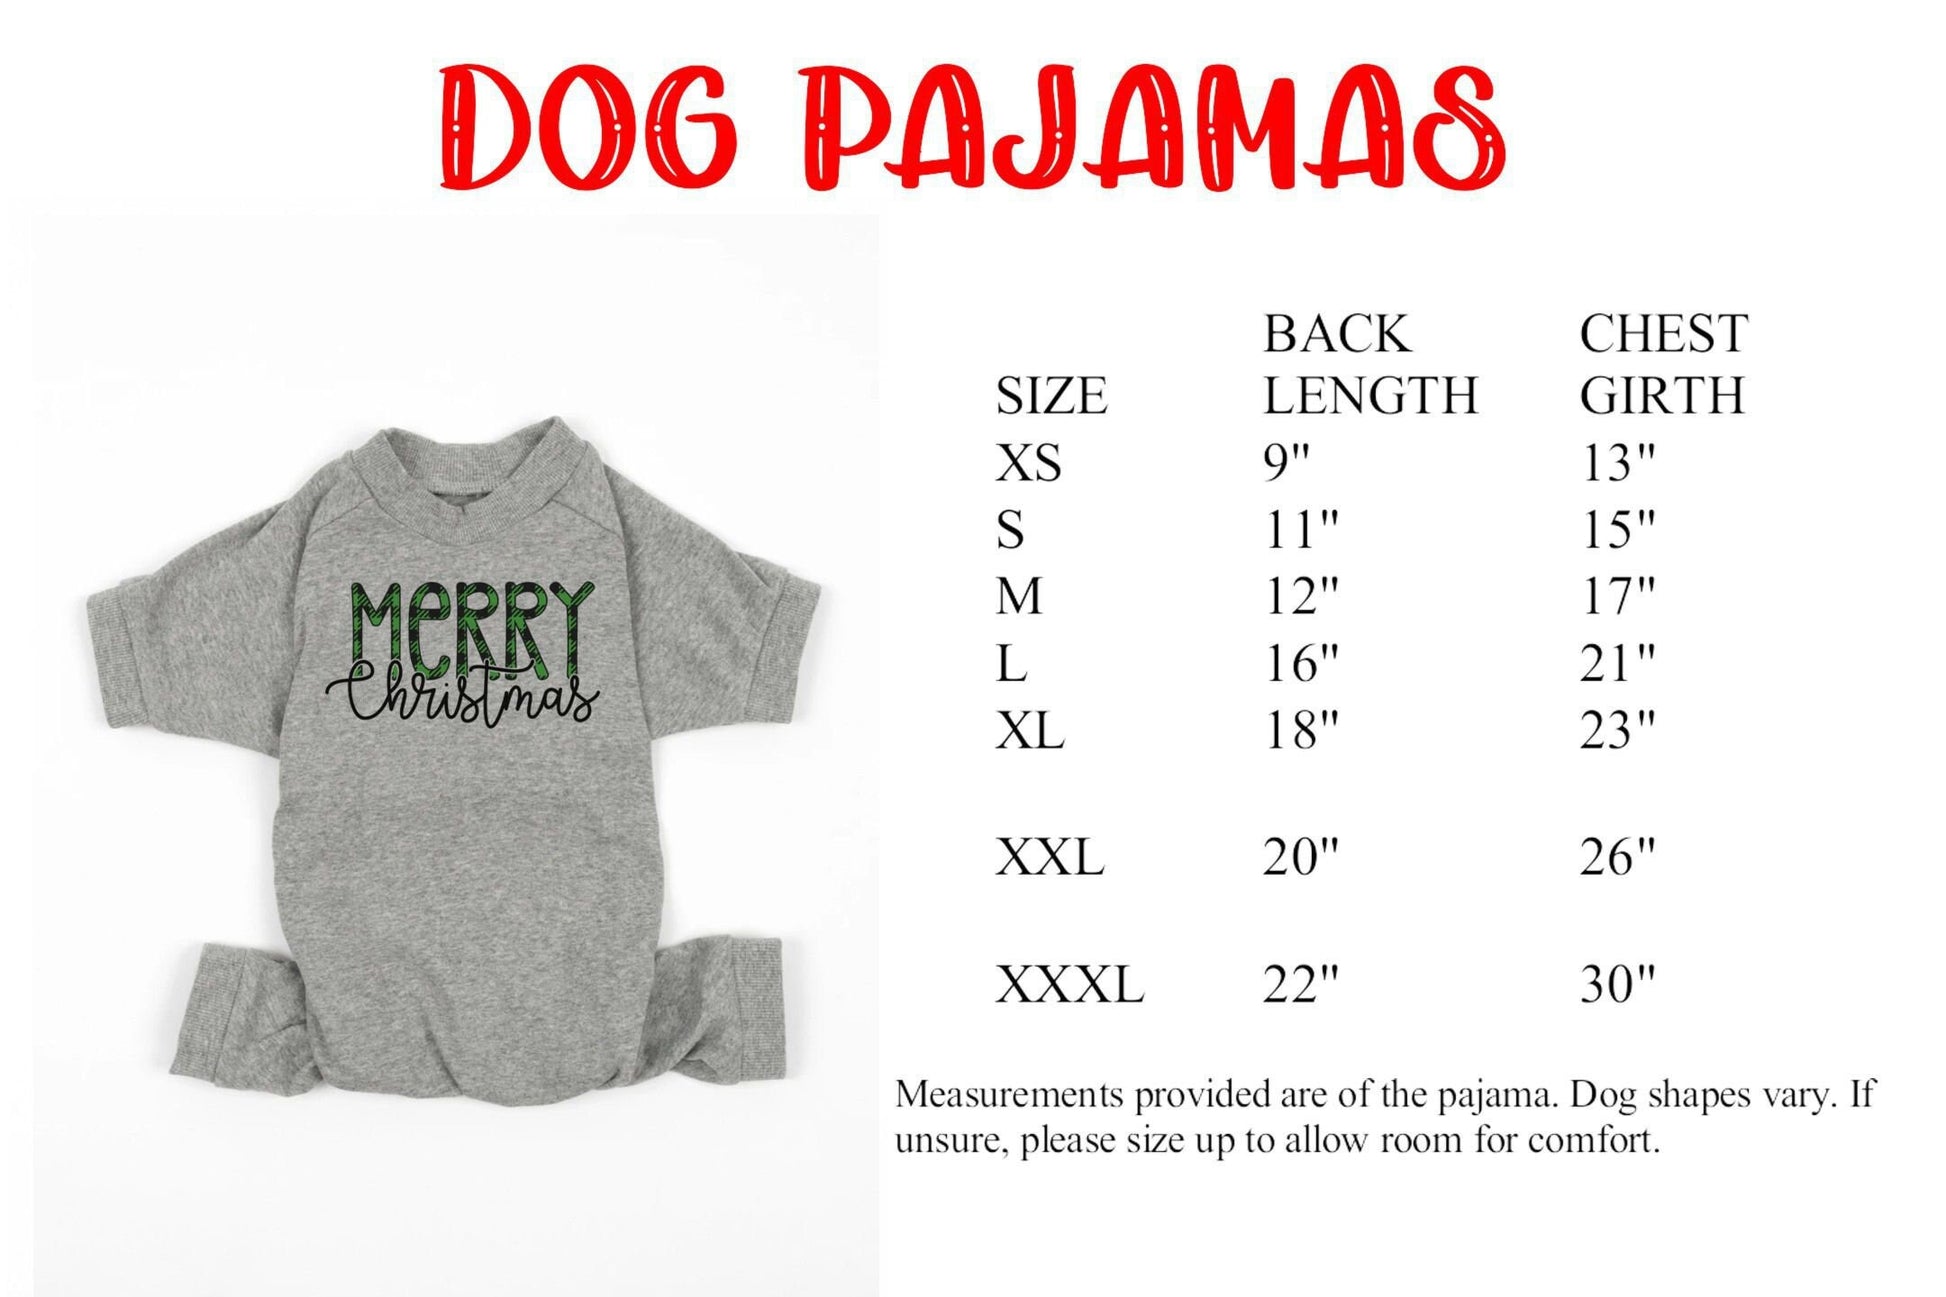 Merry Christmas Plaid Overlay Solid Light Grey Christmas Pajamas - adult and kids sizes - kids christmas pjs - Family matching PJs